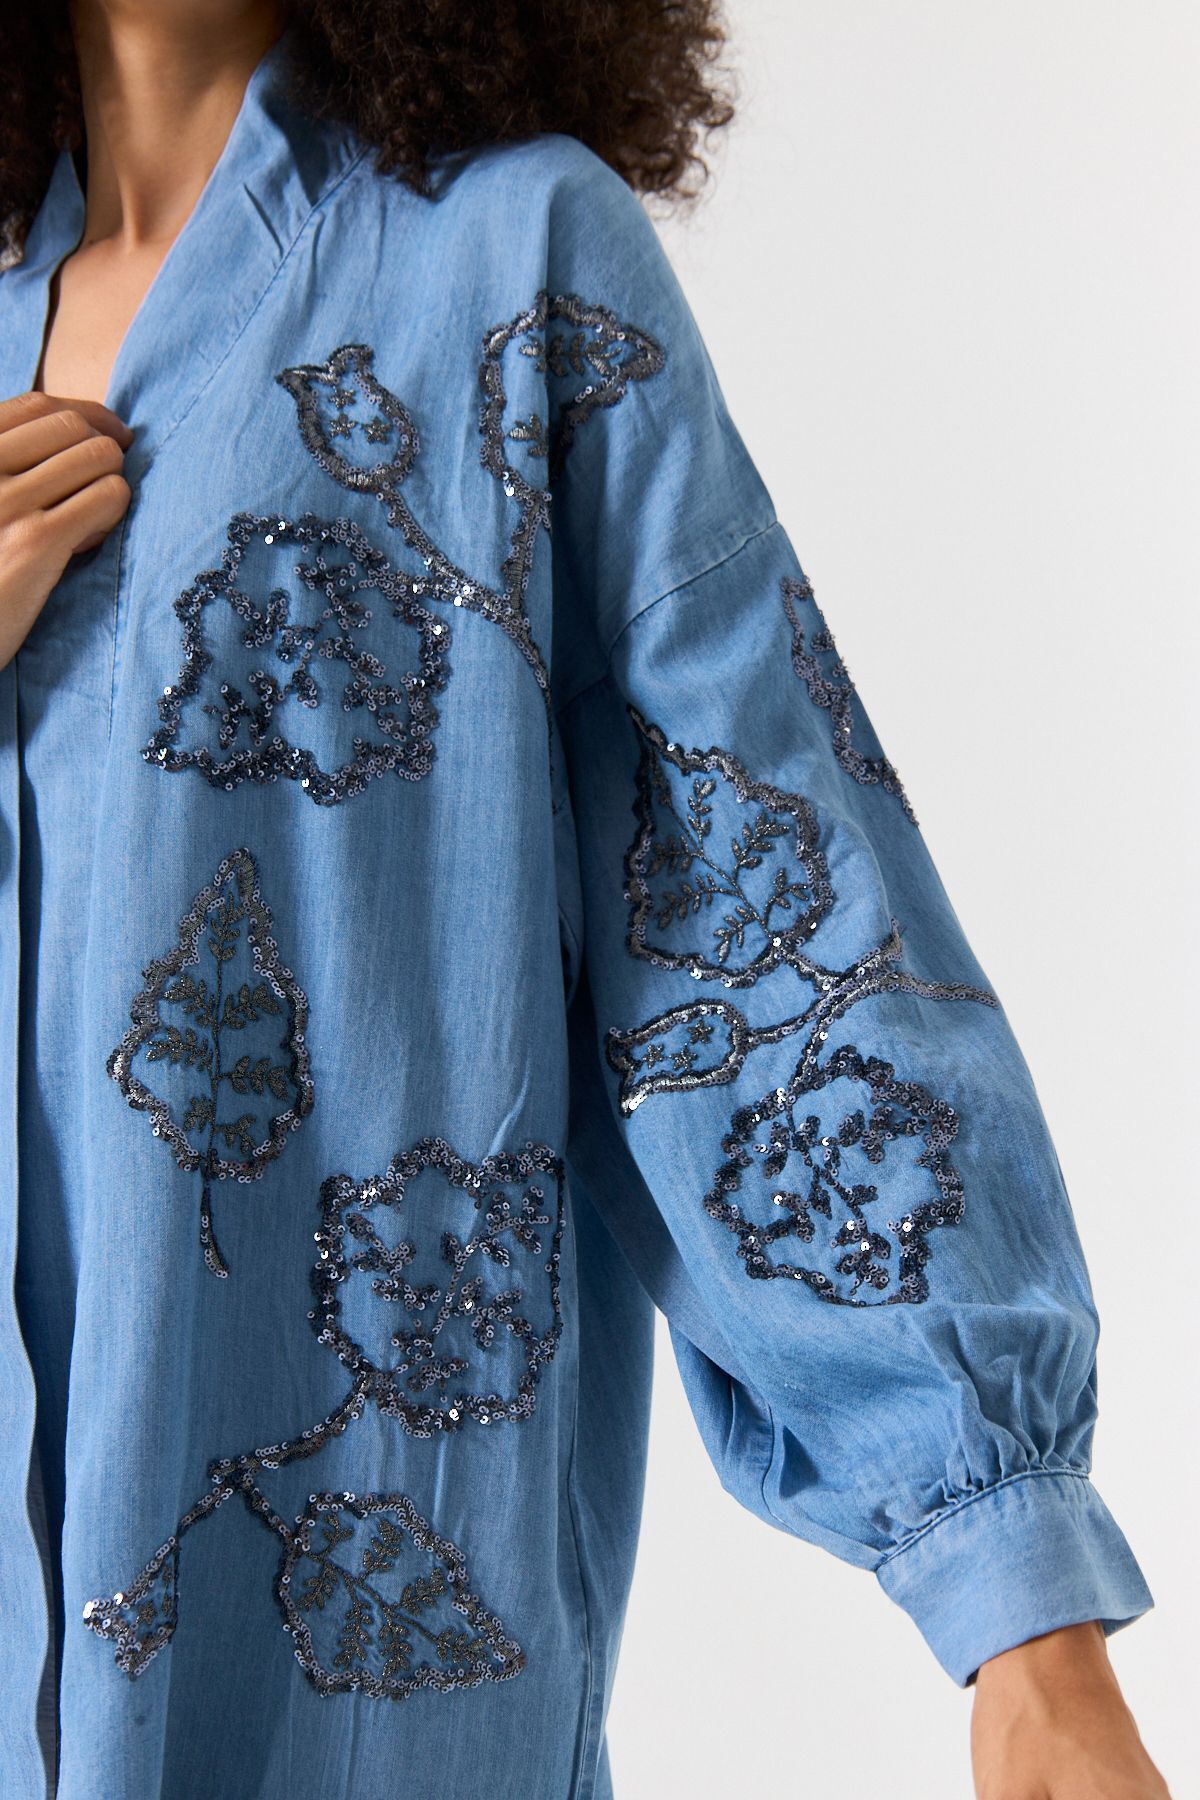 MİA NOURA kimono denim tasel kumaş ünü ve kolları pulpalet nakış işlemeli kimono